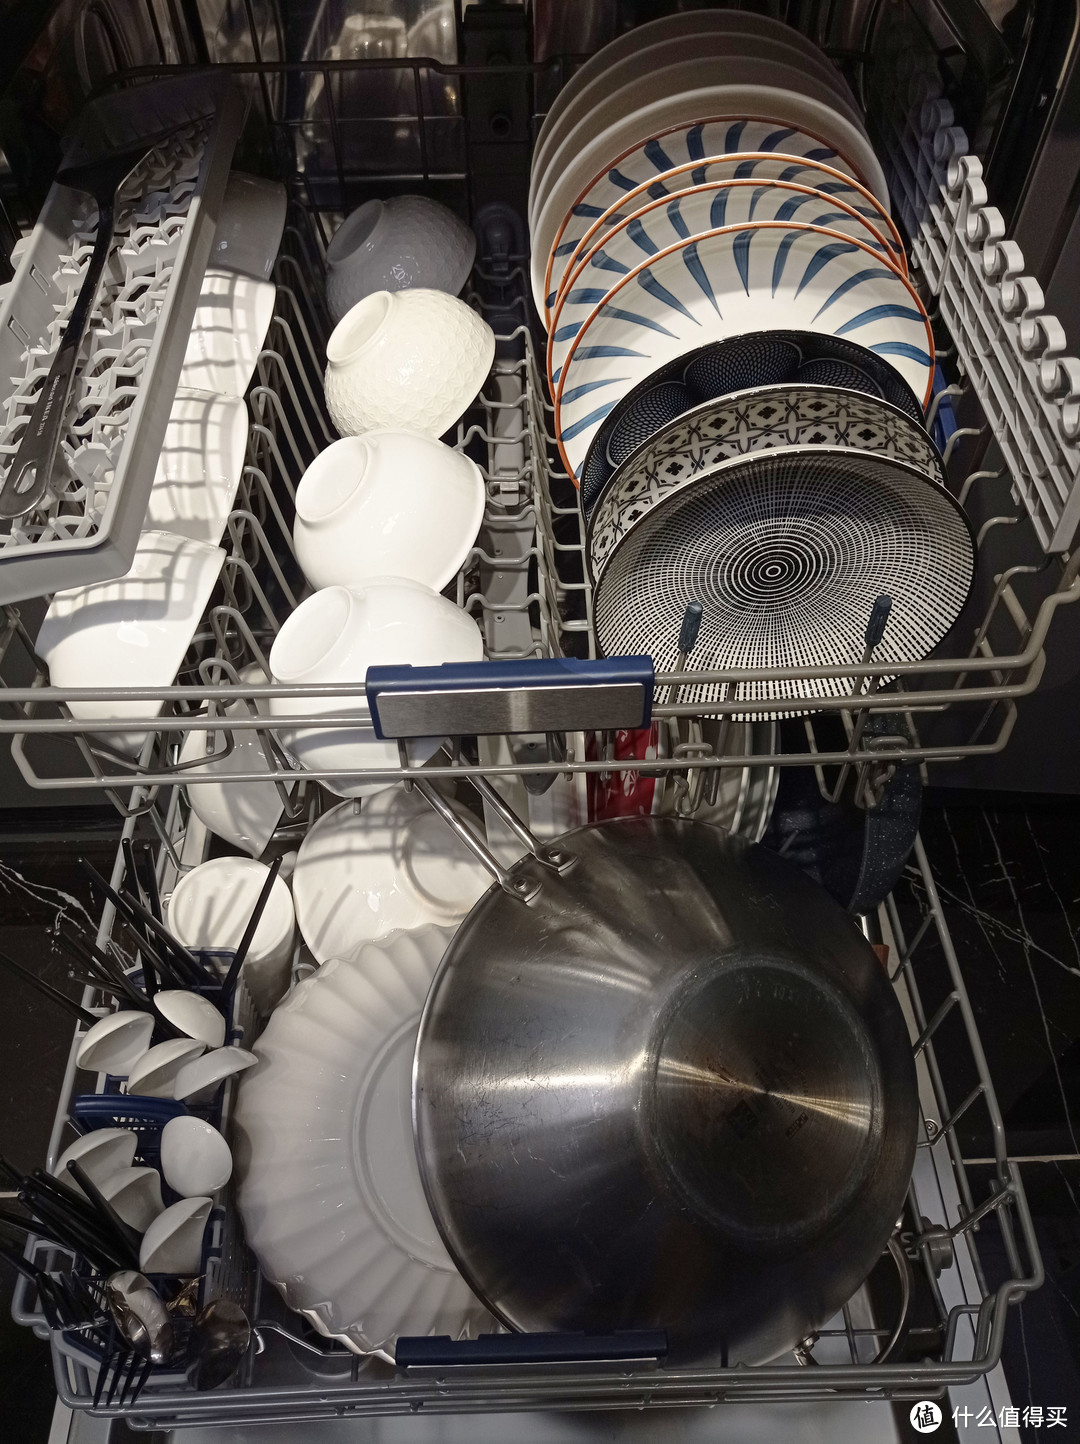 厨房翻新、精装修怎么加装洗碗机？用三种最常见洗碗机尺寸，轻松拆改橱柜替换消毒柜攻略&常见问题解答